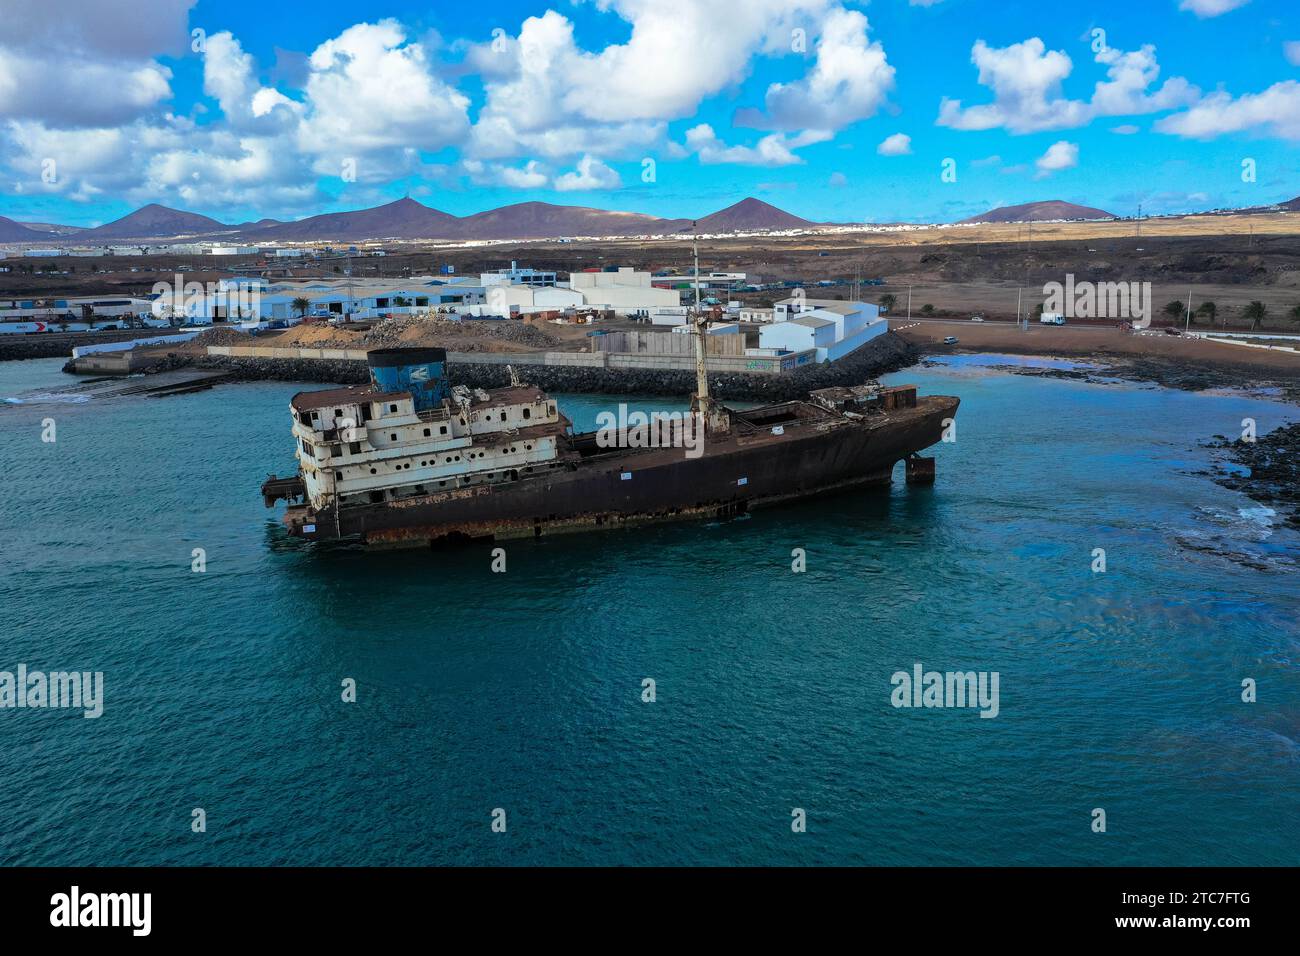 Drohnenfoto. Schiffswrack namens Tempelhalle oder Telamon in einer Bucht in der Nähe des Industriehafens Arrecifes auf den Kanarischen Inseln Lanzarote. Ökologische Disas Stockfoto